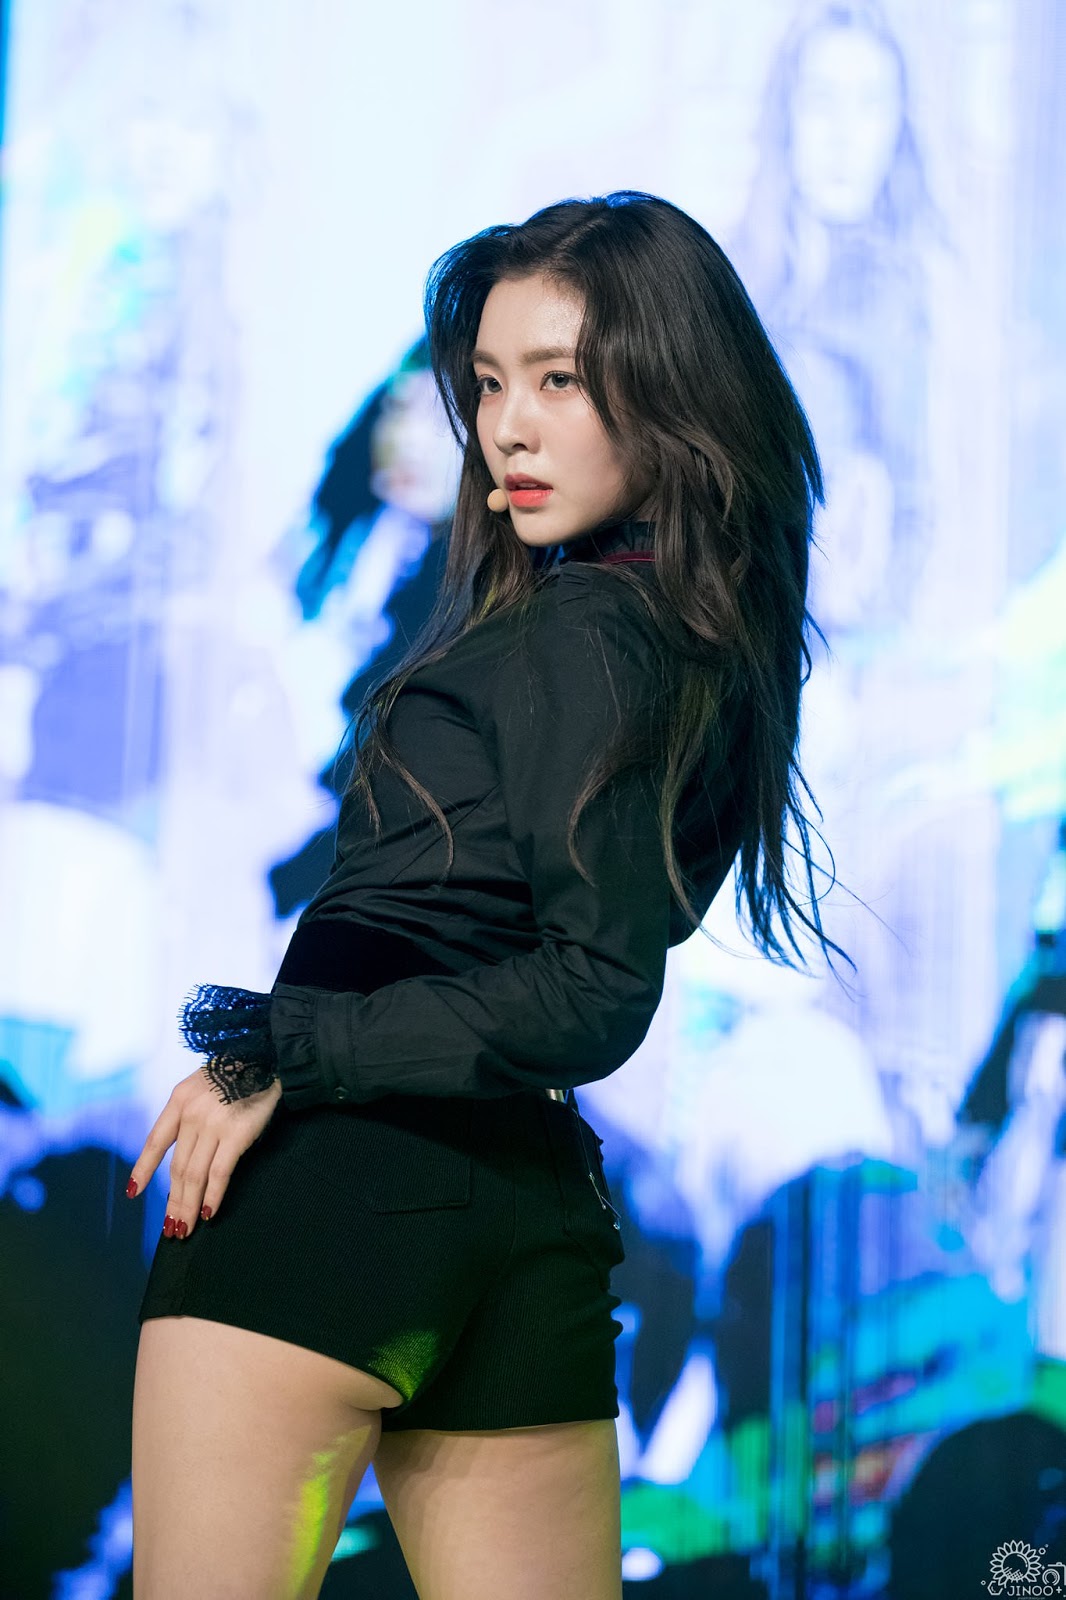 Red Velvet Irene Showcases Her Sexiness In New Performance Daily K Pop News